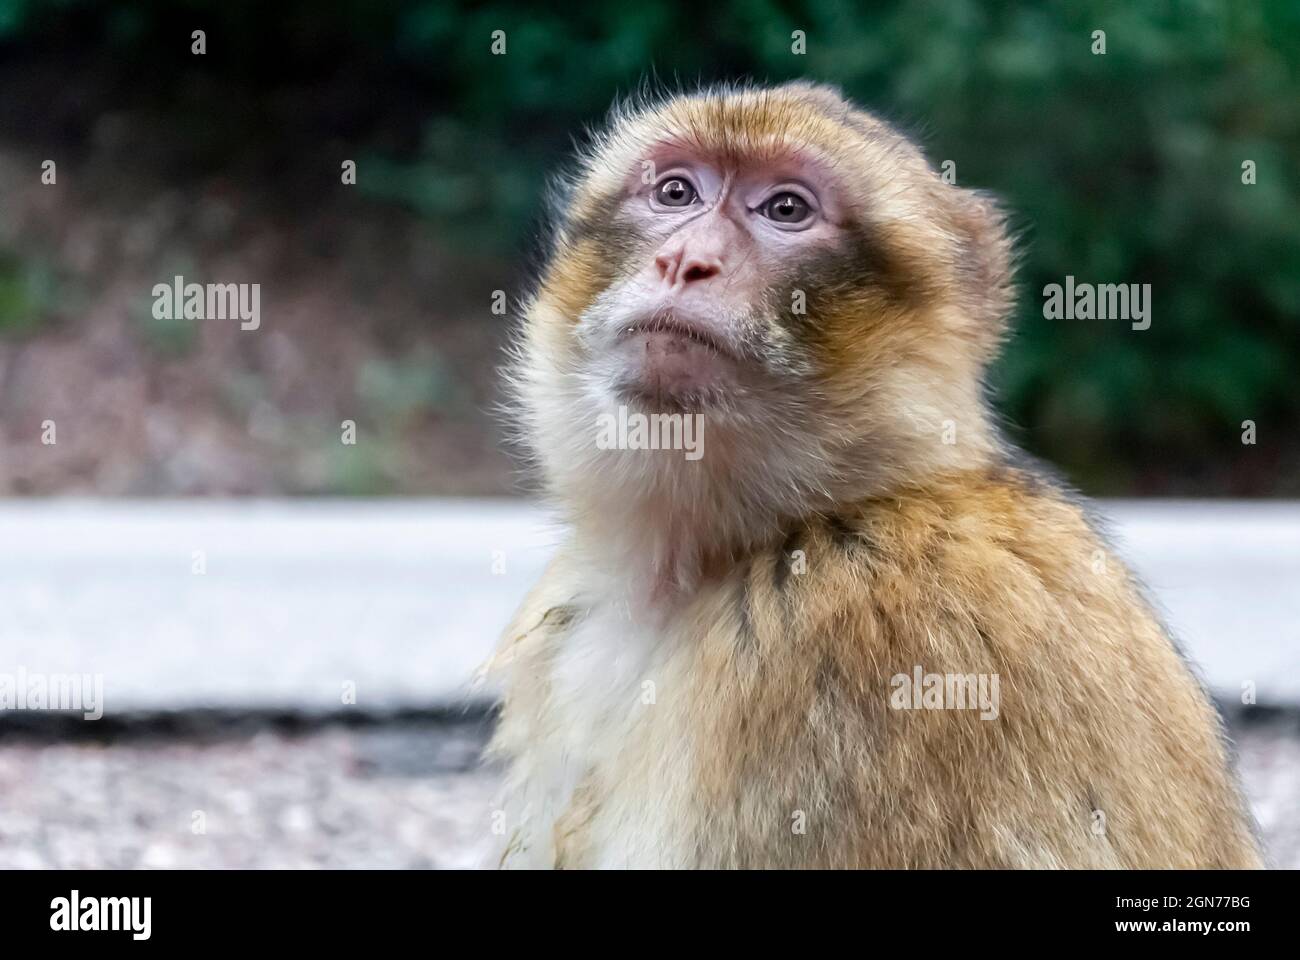 Nahaufnahme eines freiblickenden Makaken-Affen, der in warmen Farben und weichen Hintergrundunschärfen in Gedanken zum Himmel blickt. Stockfoto